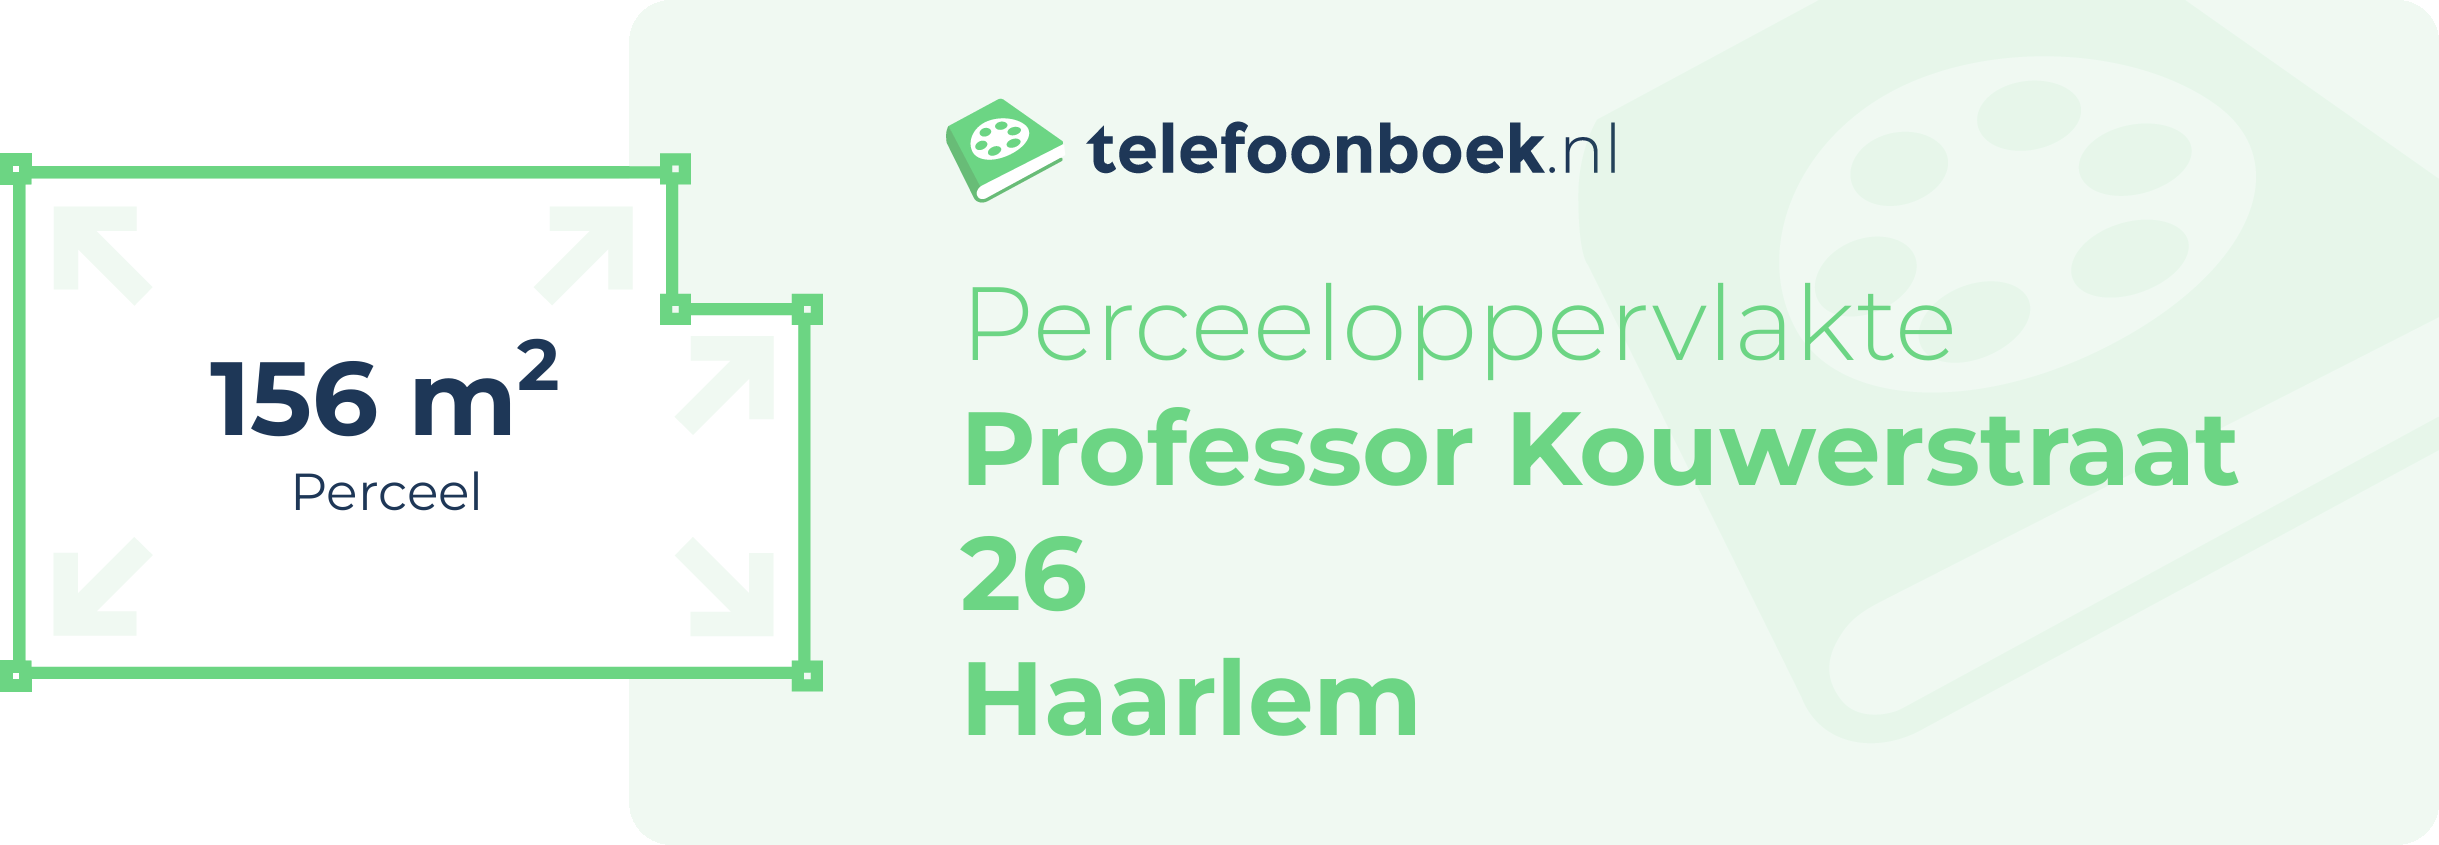 Perceeloppervlakte Professor Kouwerstraat 26 Haarlem